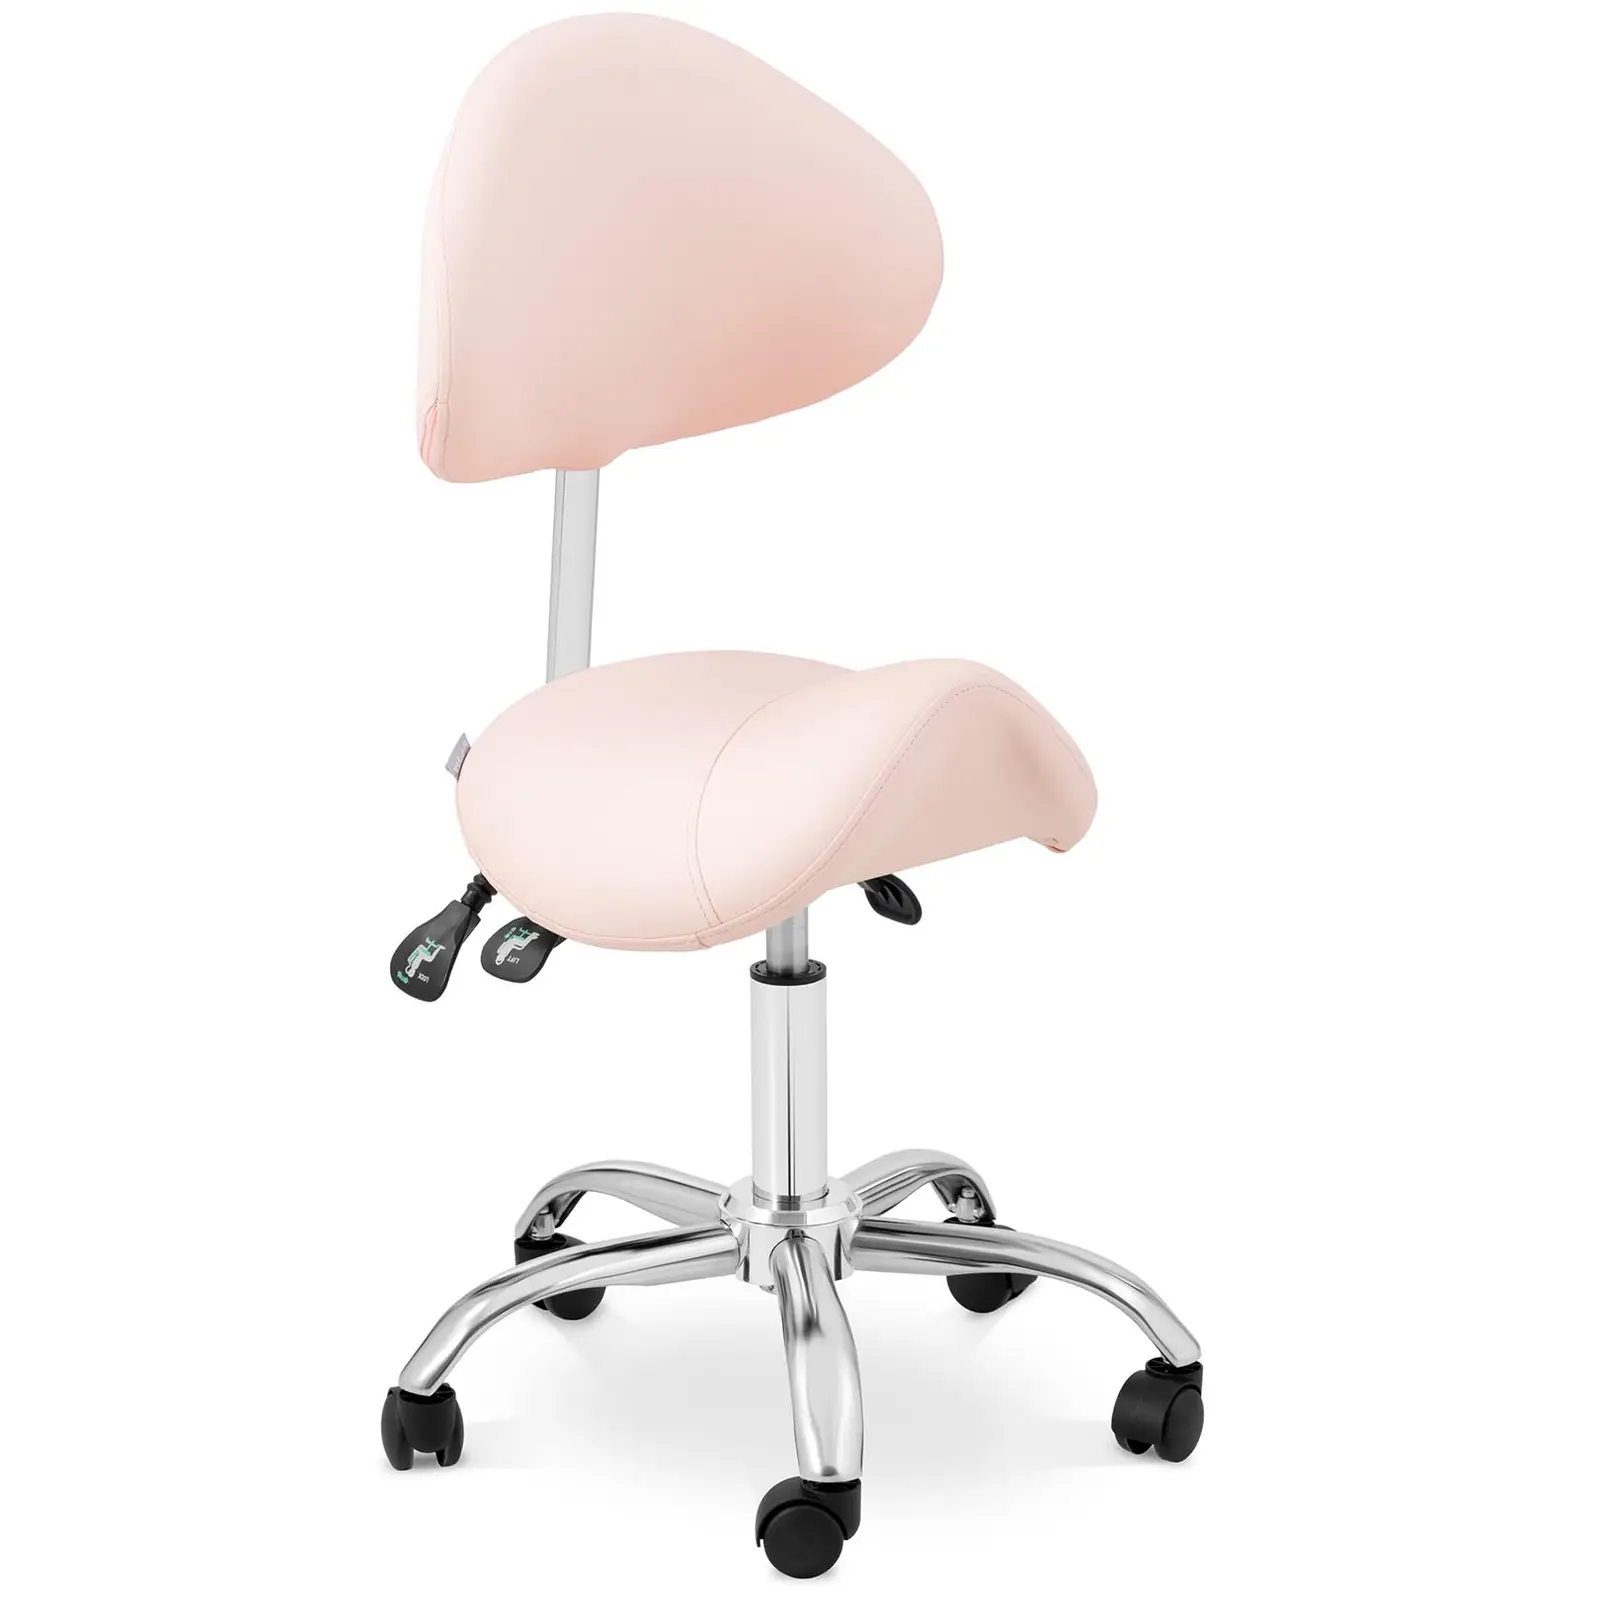 Scaun cu șa - spătar și înălțime scaun reglabile pe înălțime - 55 - 69 cm - 150 kg - Pink, Silver